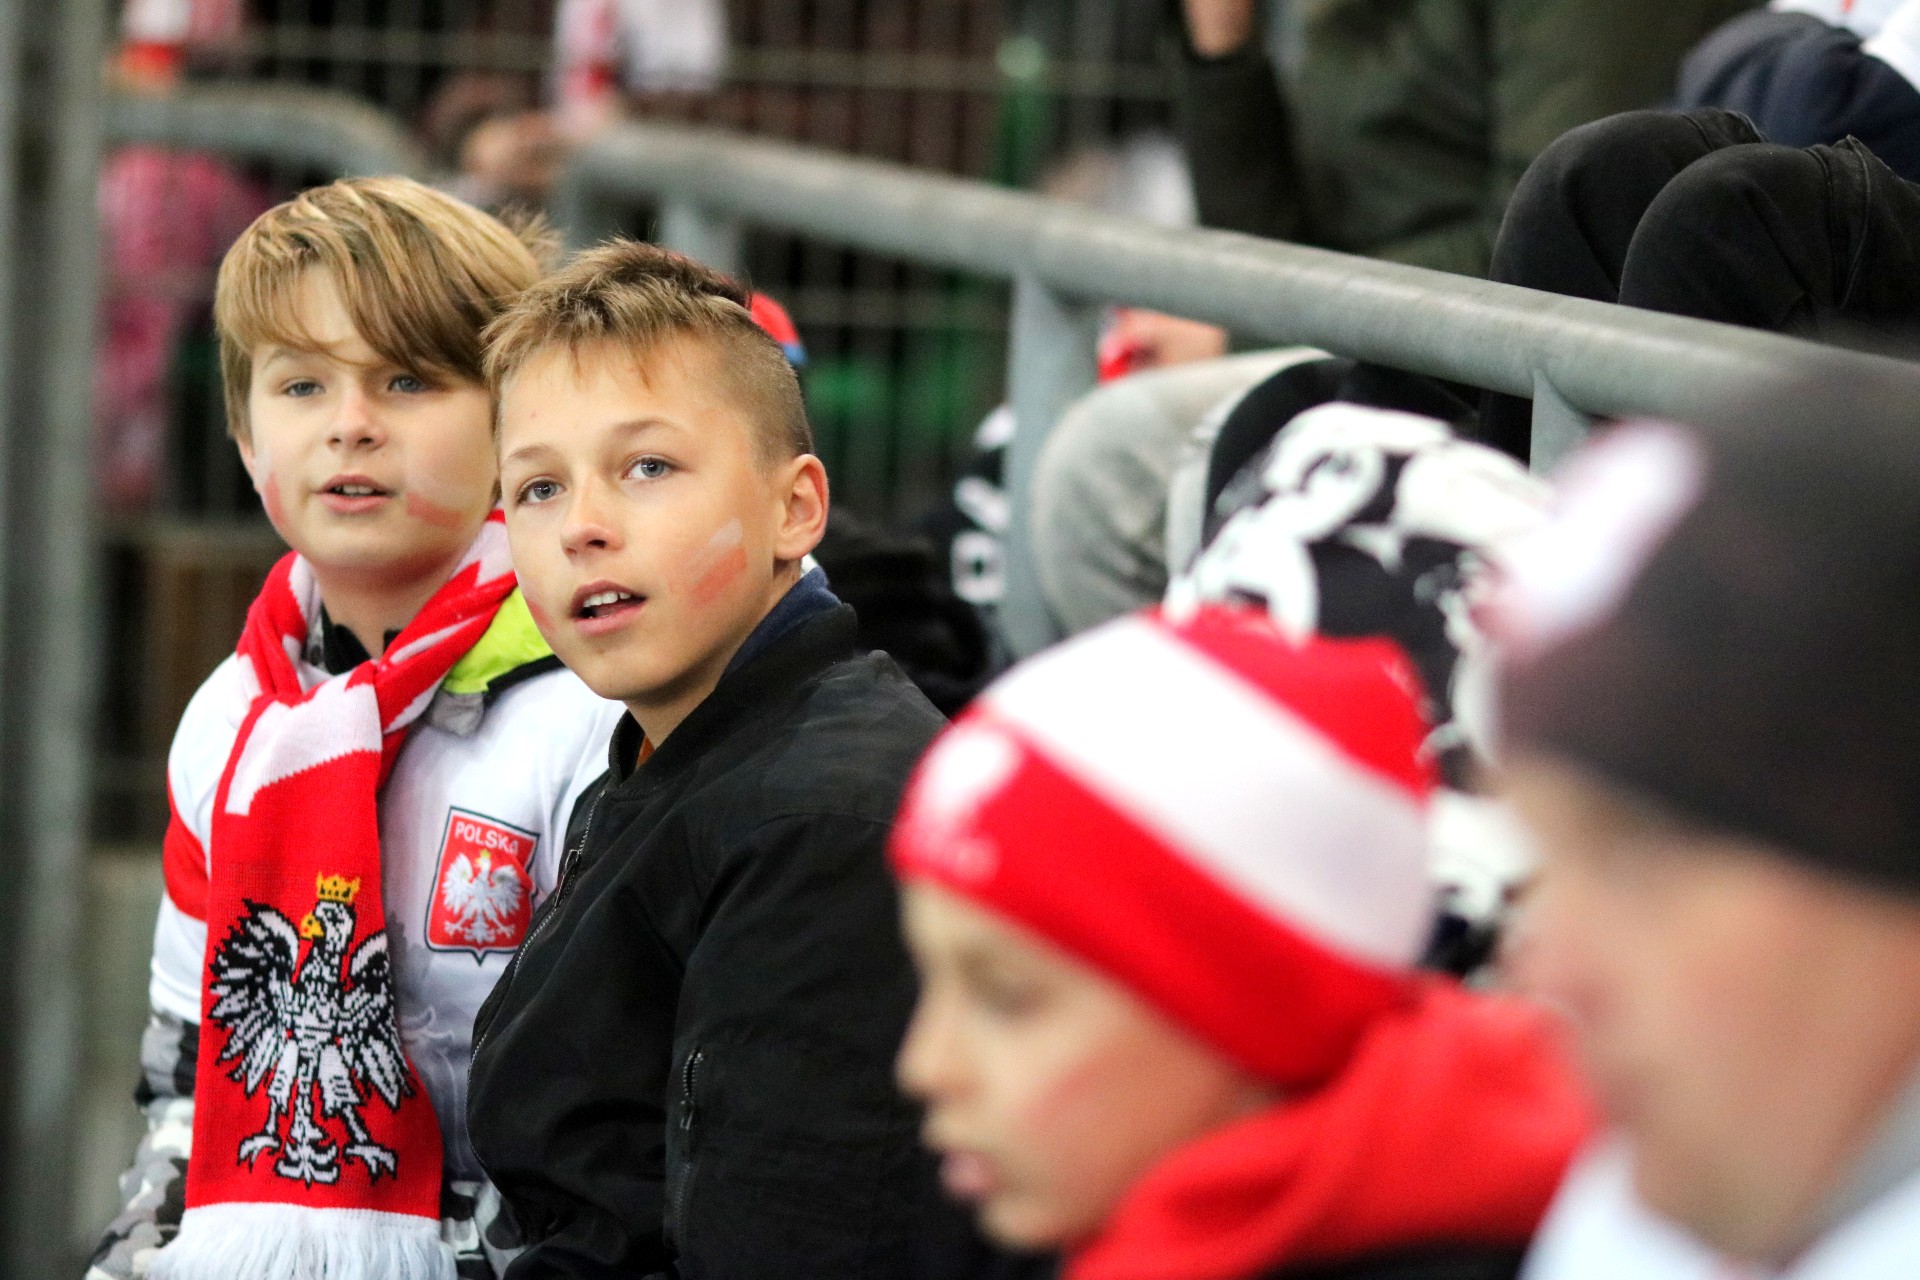 Grupa chłopców siedzi na stadionie, kilku ma biało-czerwone szaliki i czapki.